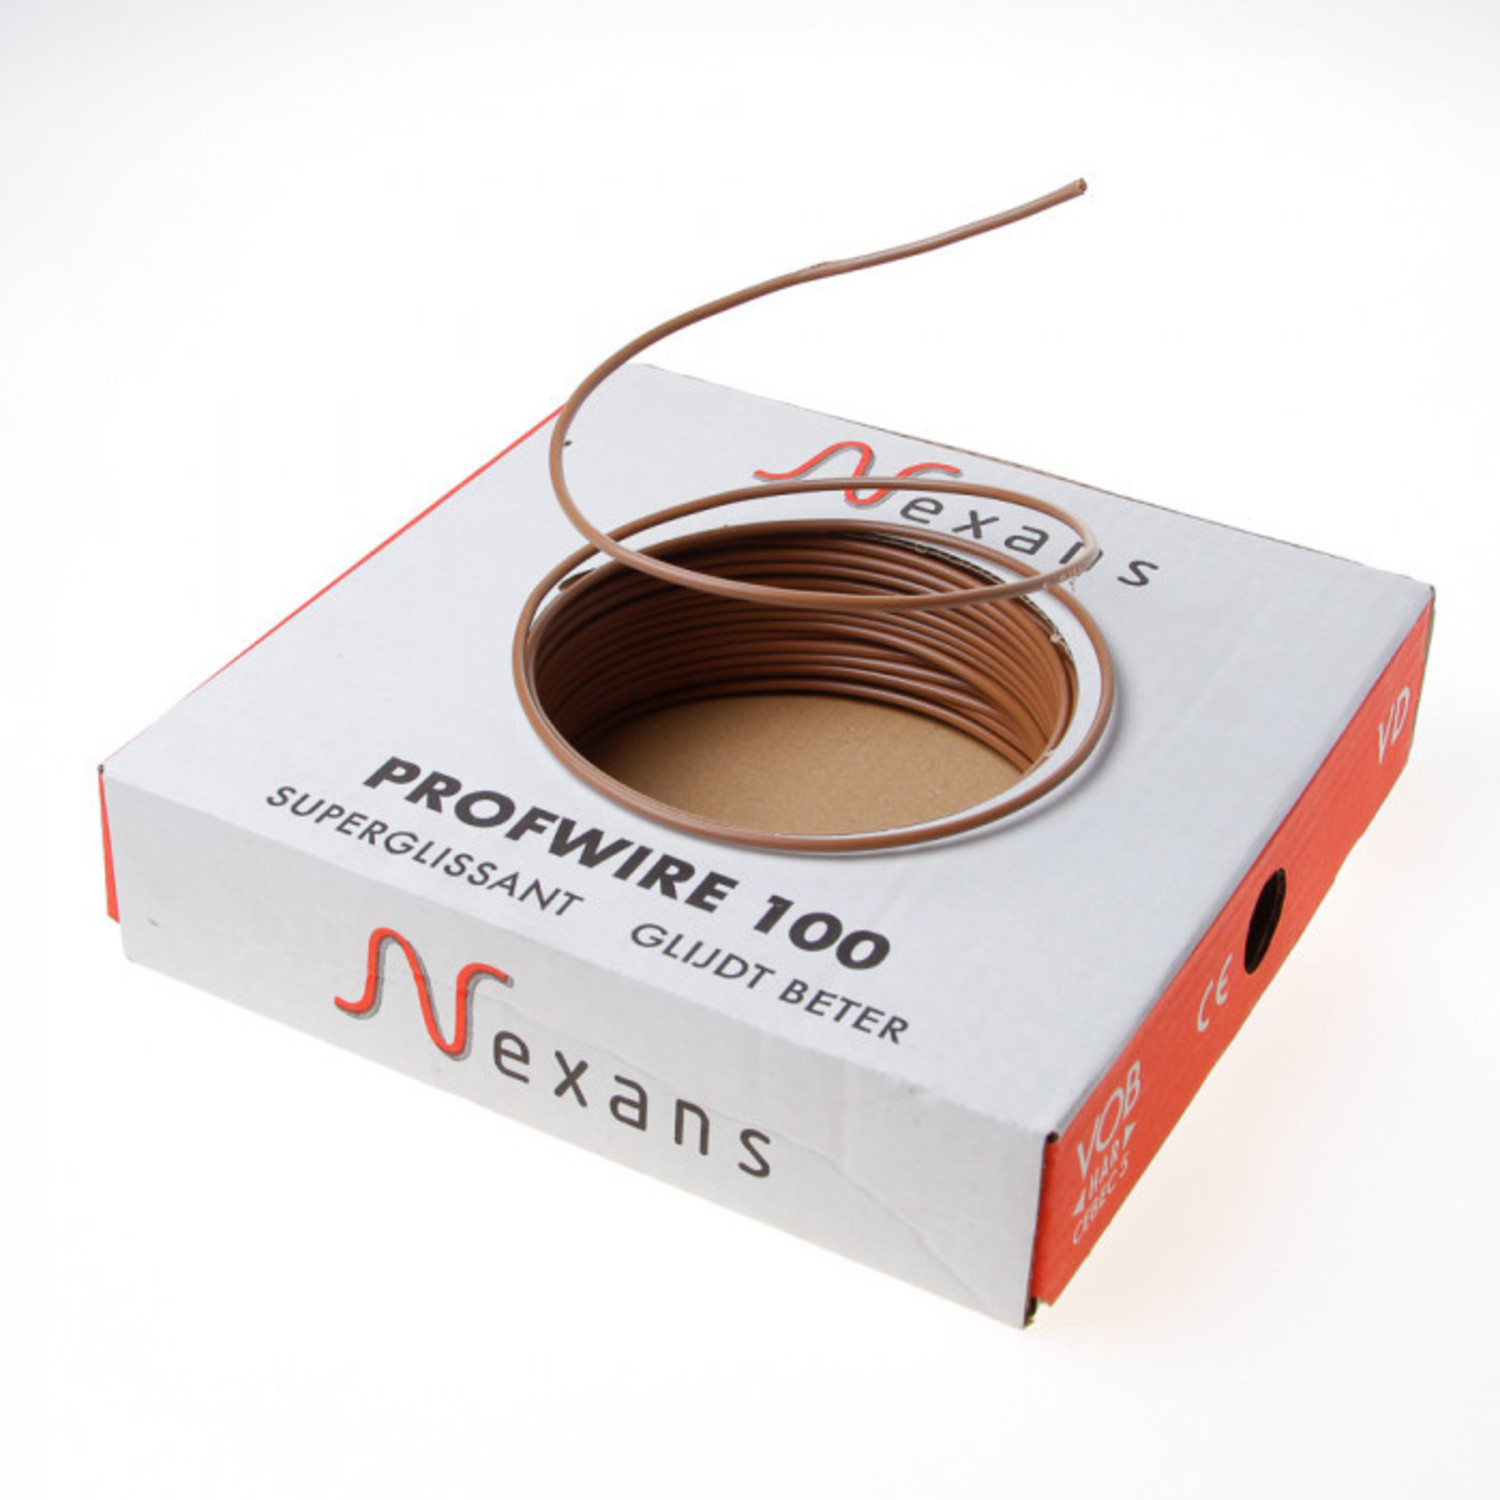 variabel expeditie Nylon Nexans Profwire kabel installatiedraad bruin 2.5mm² - Ten Wolde Tools